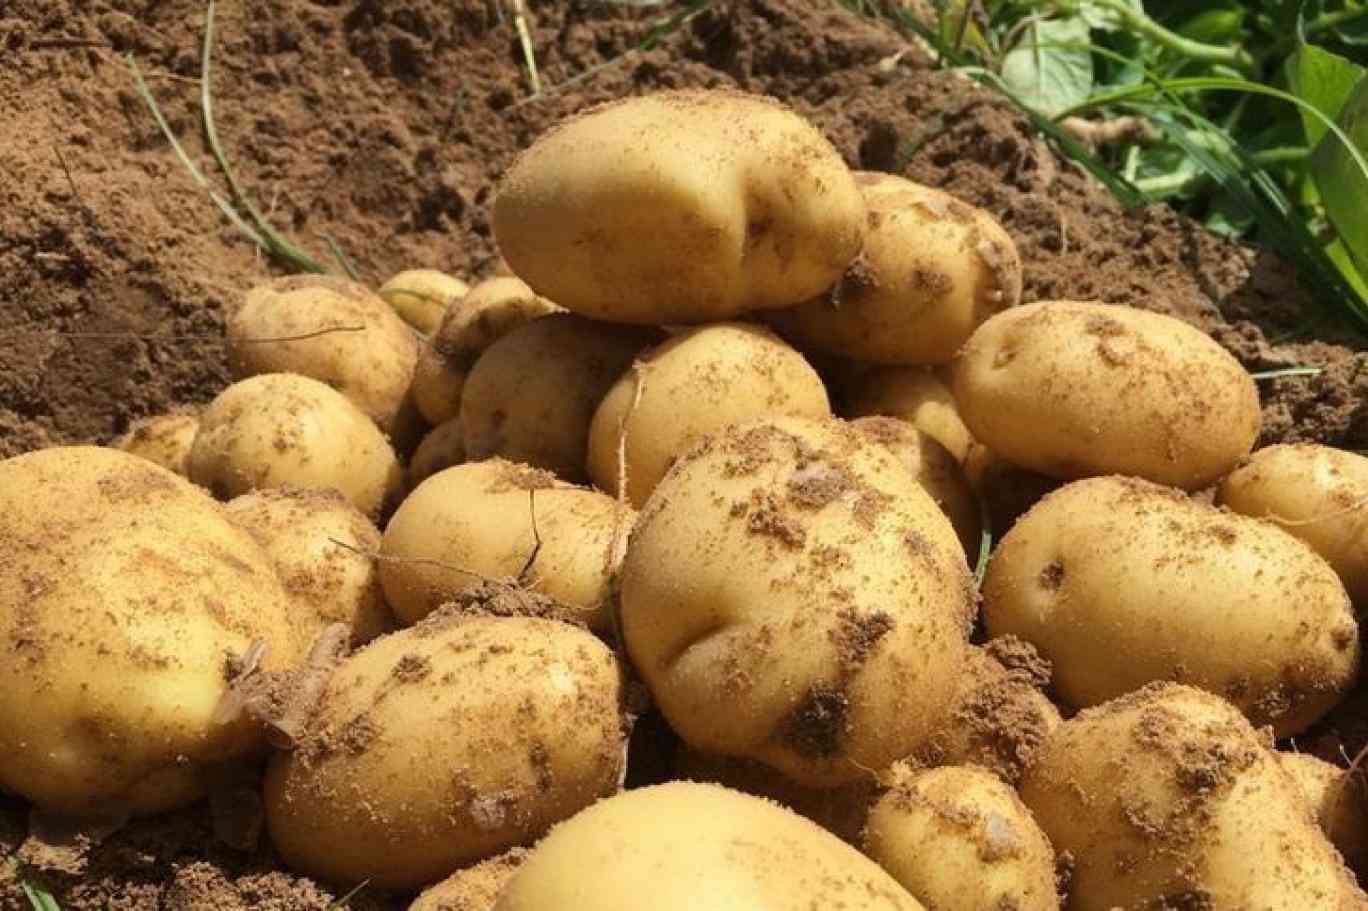 قريبا.. ارتفاع جنوني في أسعار البطاطا بالأردن بسبب اللفحة